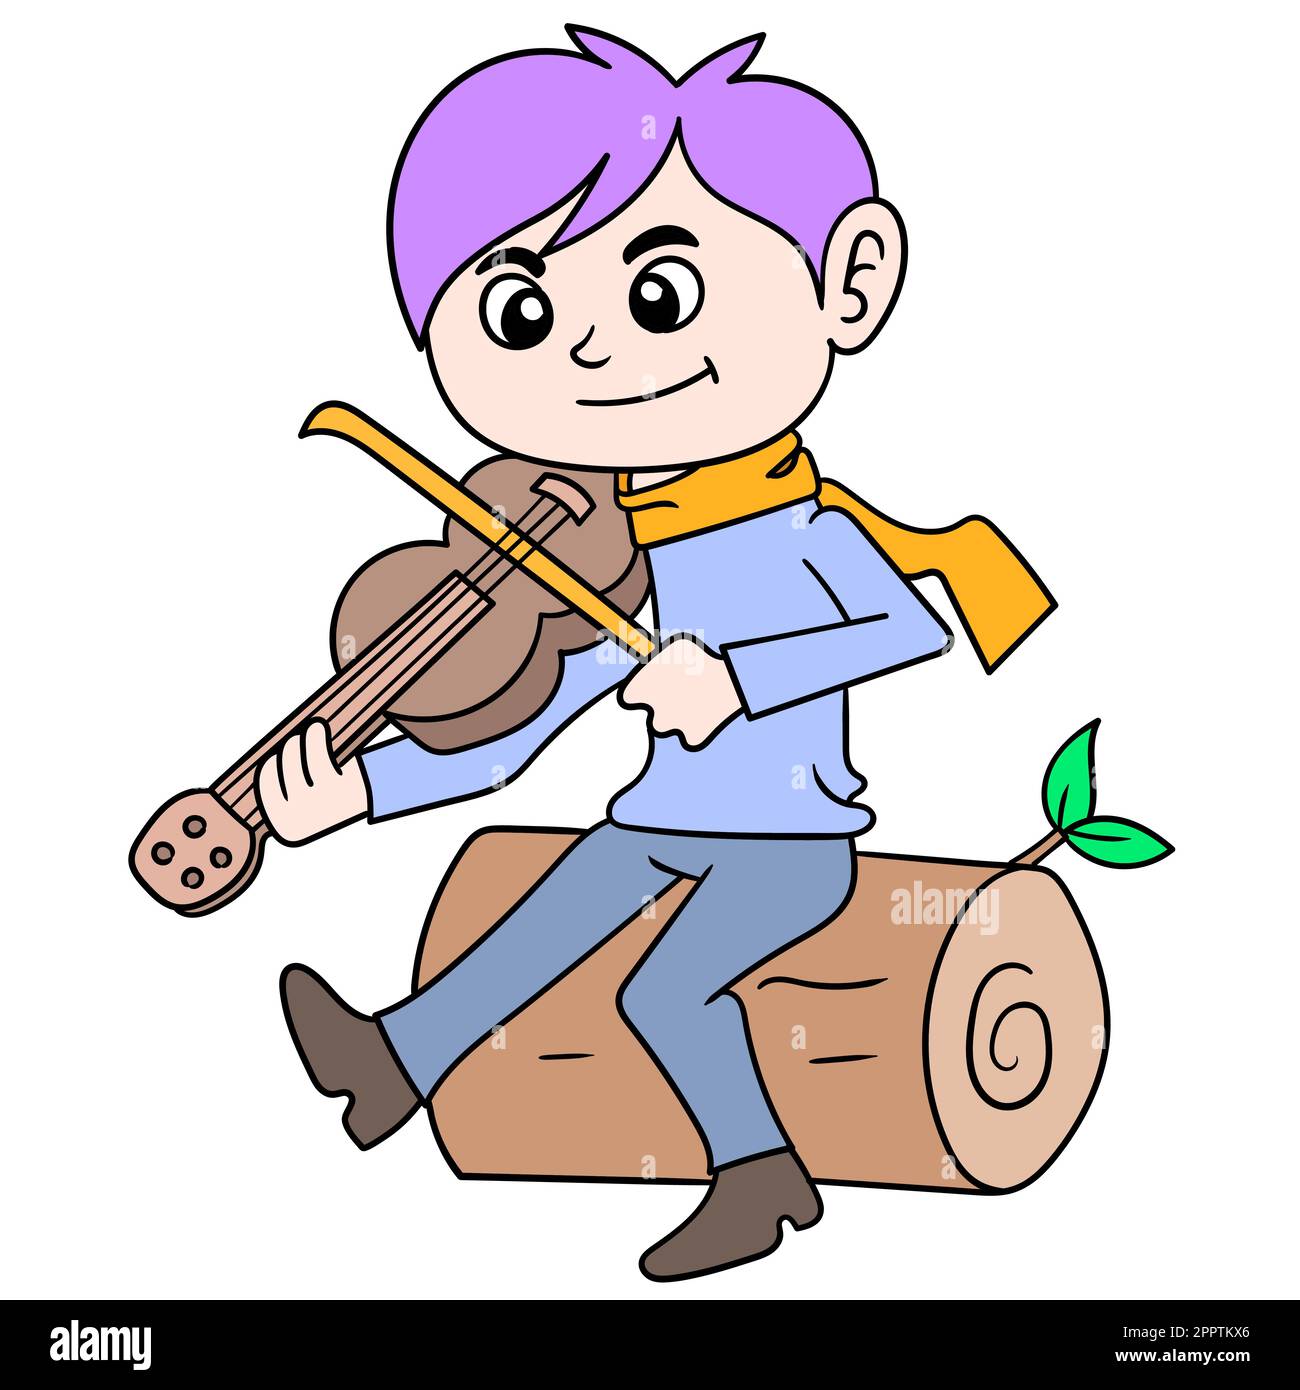 un giovane che suona la musica del violino siede su un tronco dell'albero, immagine dell'icona del doodle kawaii Illustrazione Vettoriale